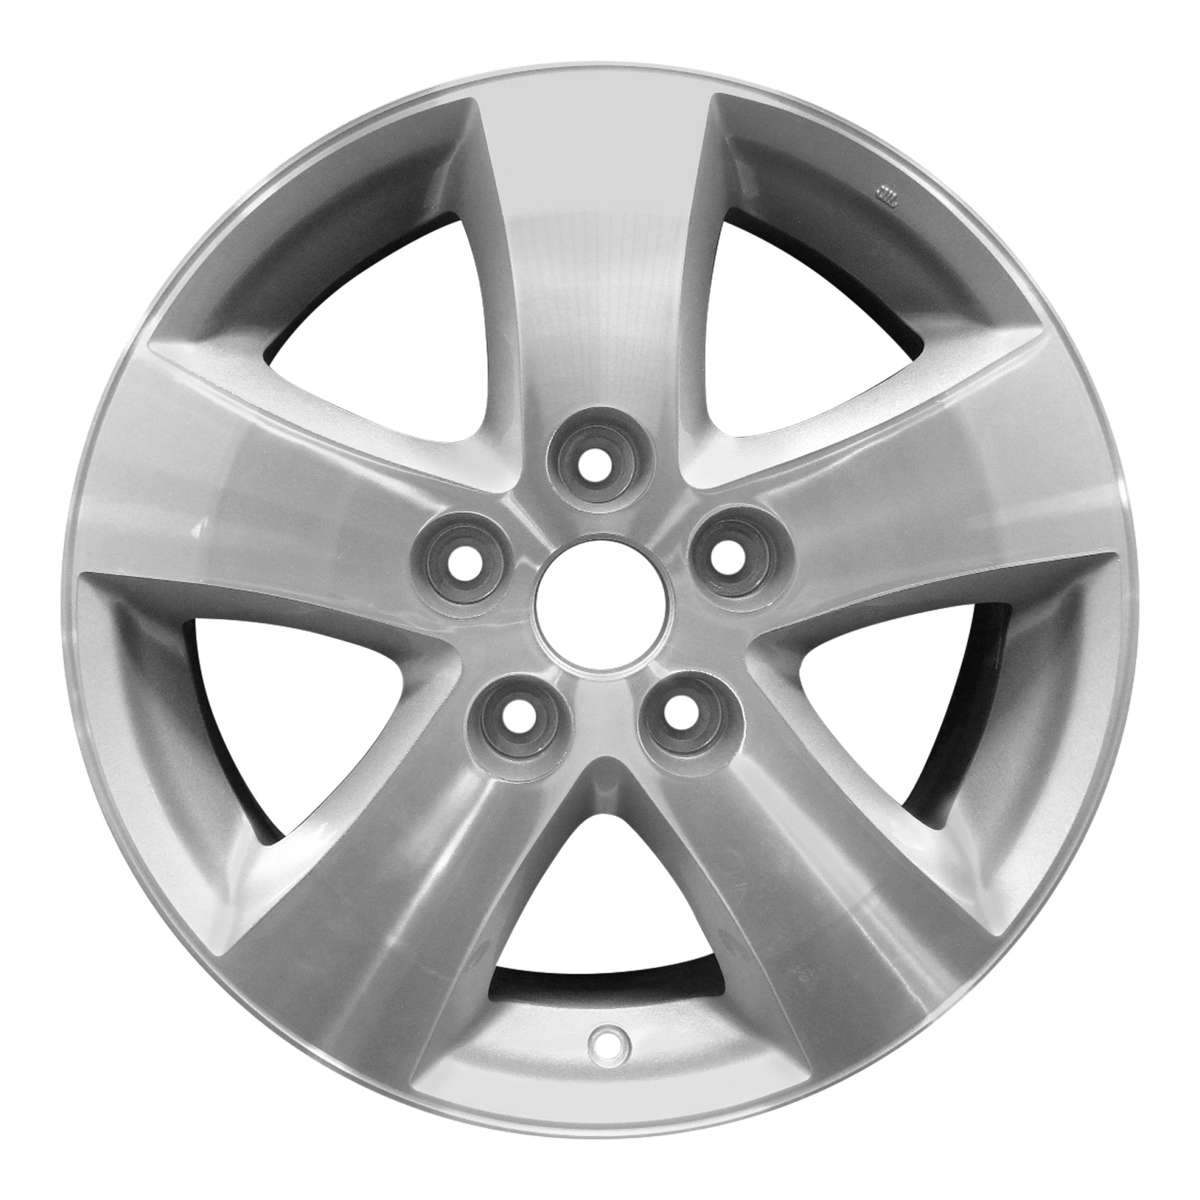 2016 Dodge Journey New 17" Replacement Wheel Rim RW2372MS